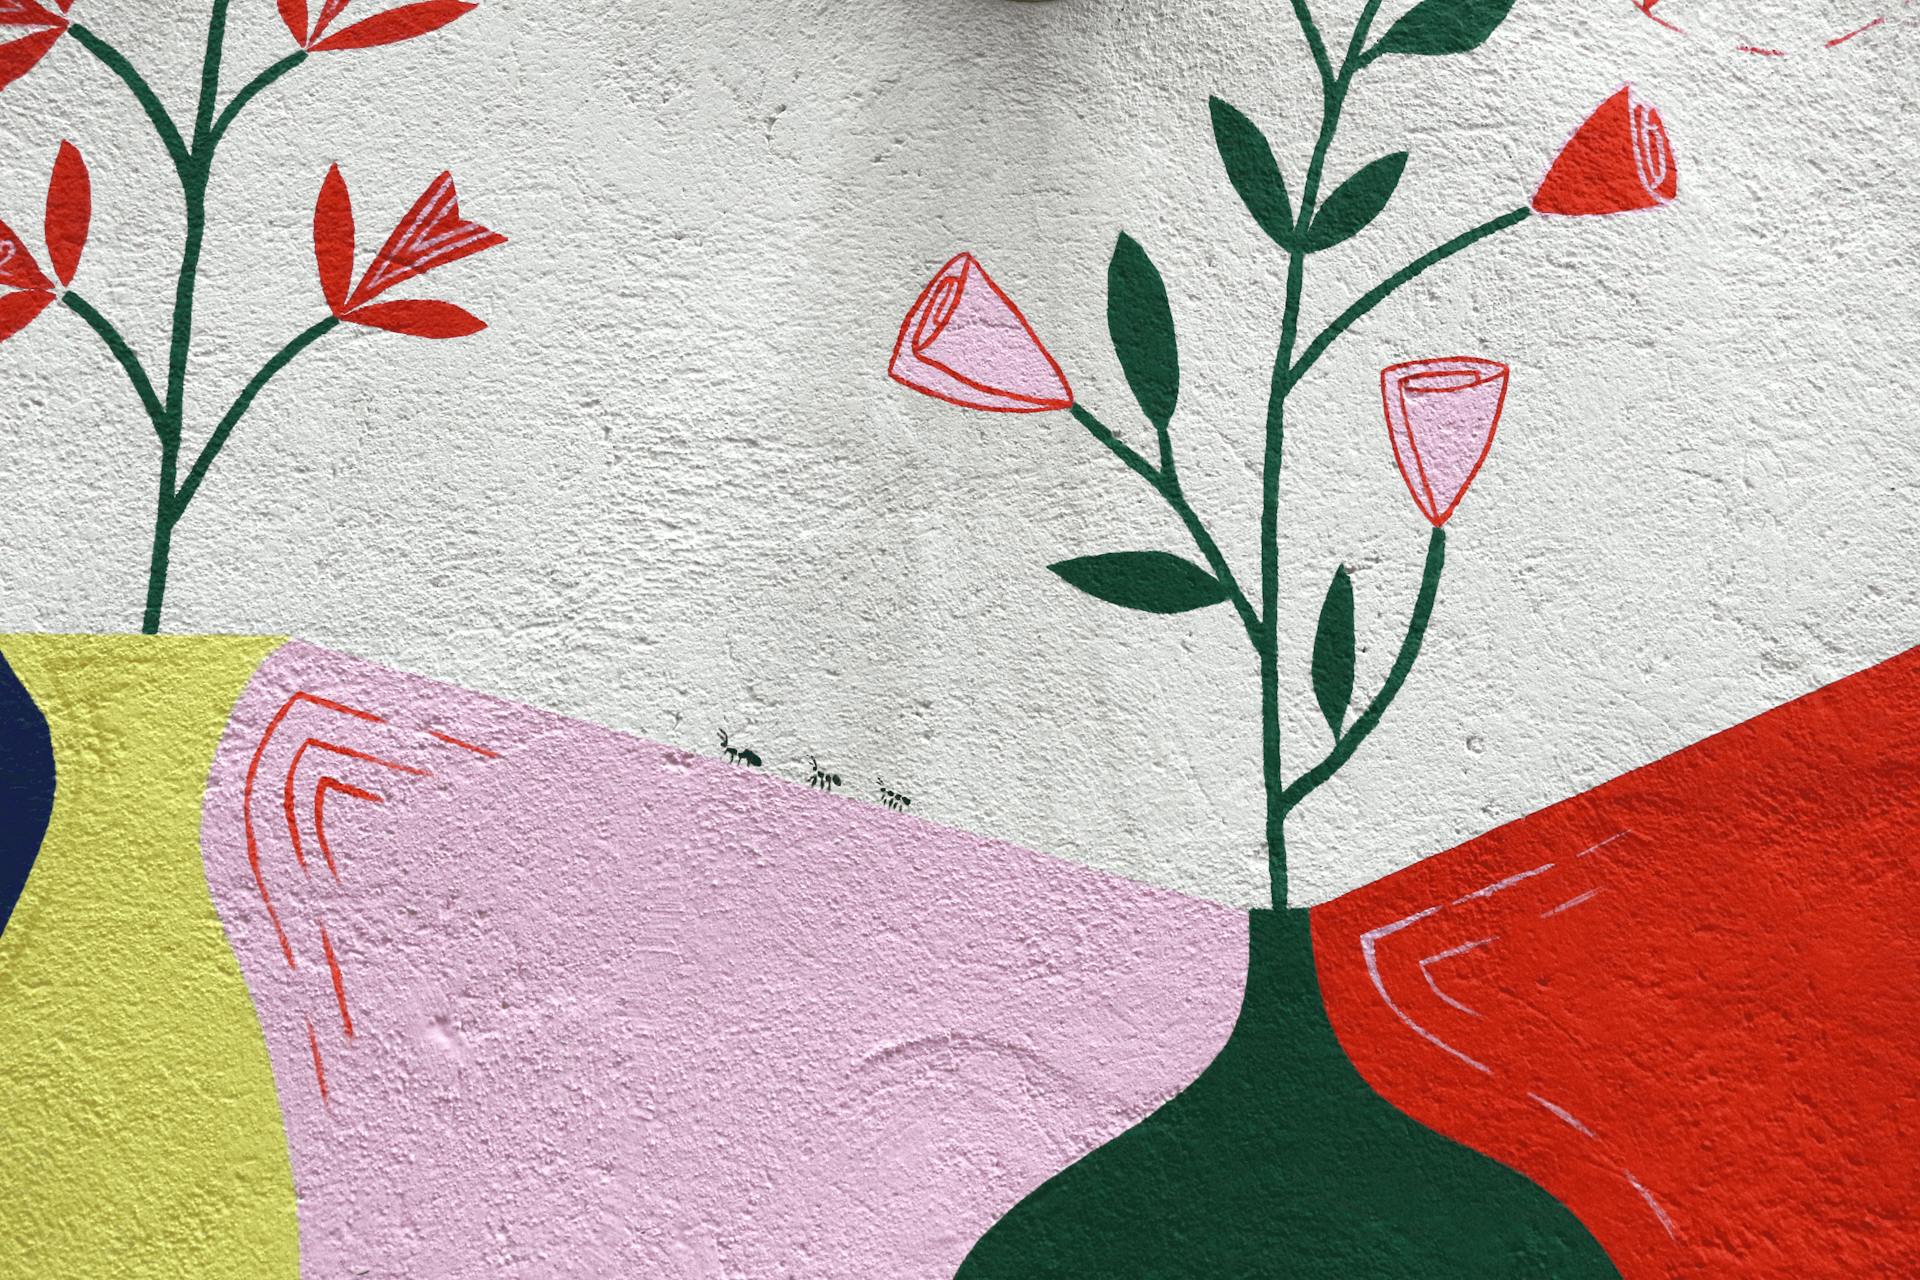 Détails de la peinture murale d'entrée de la ville de Loudéac, arborant des fourmis.